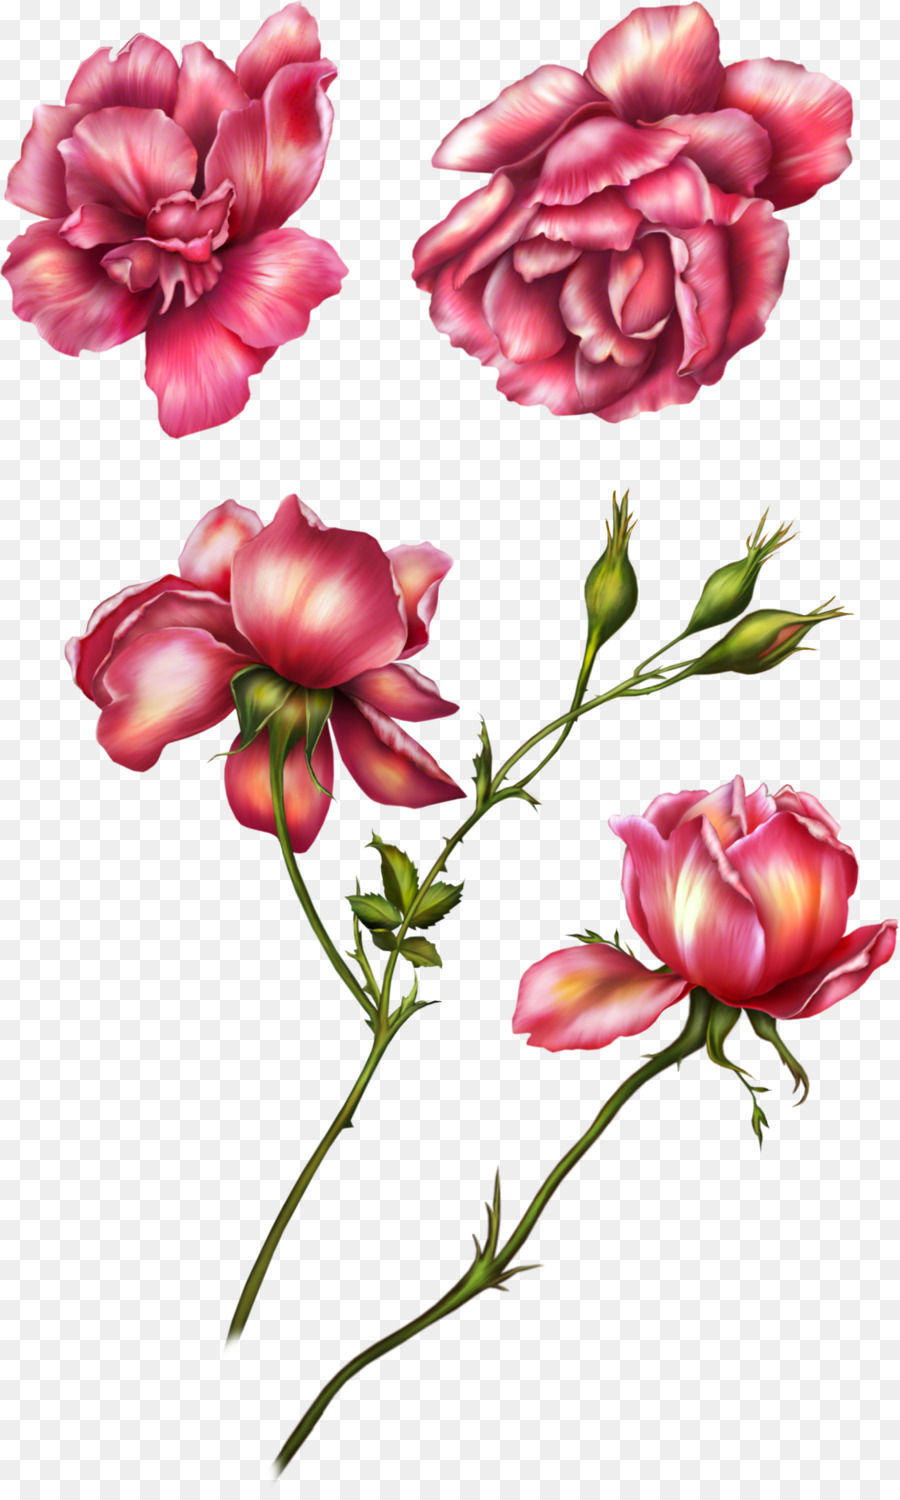 Giardino fiorito di rose Clip art - rose rosa